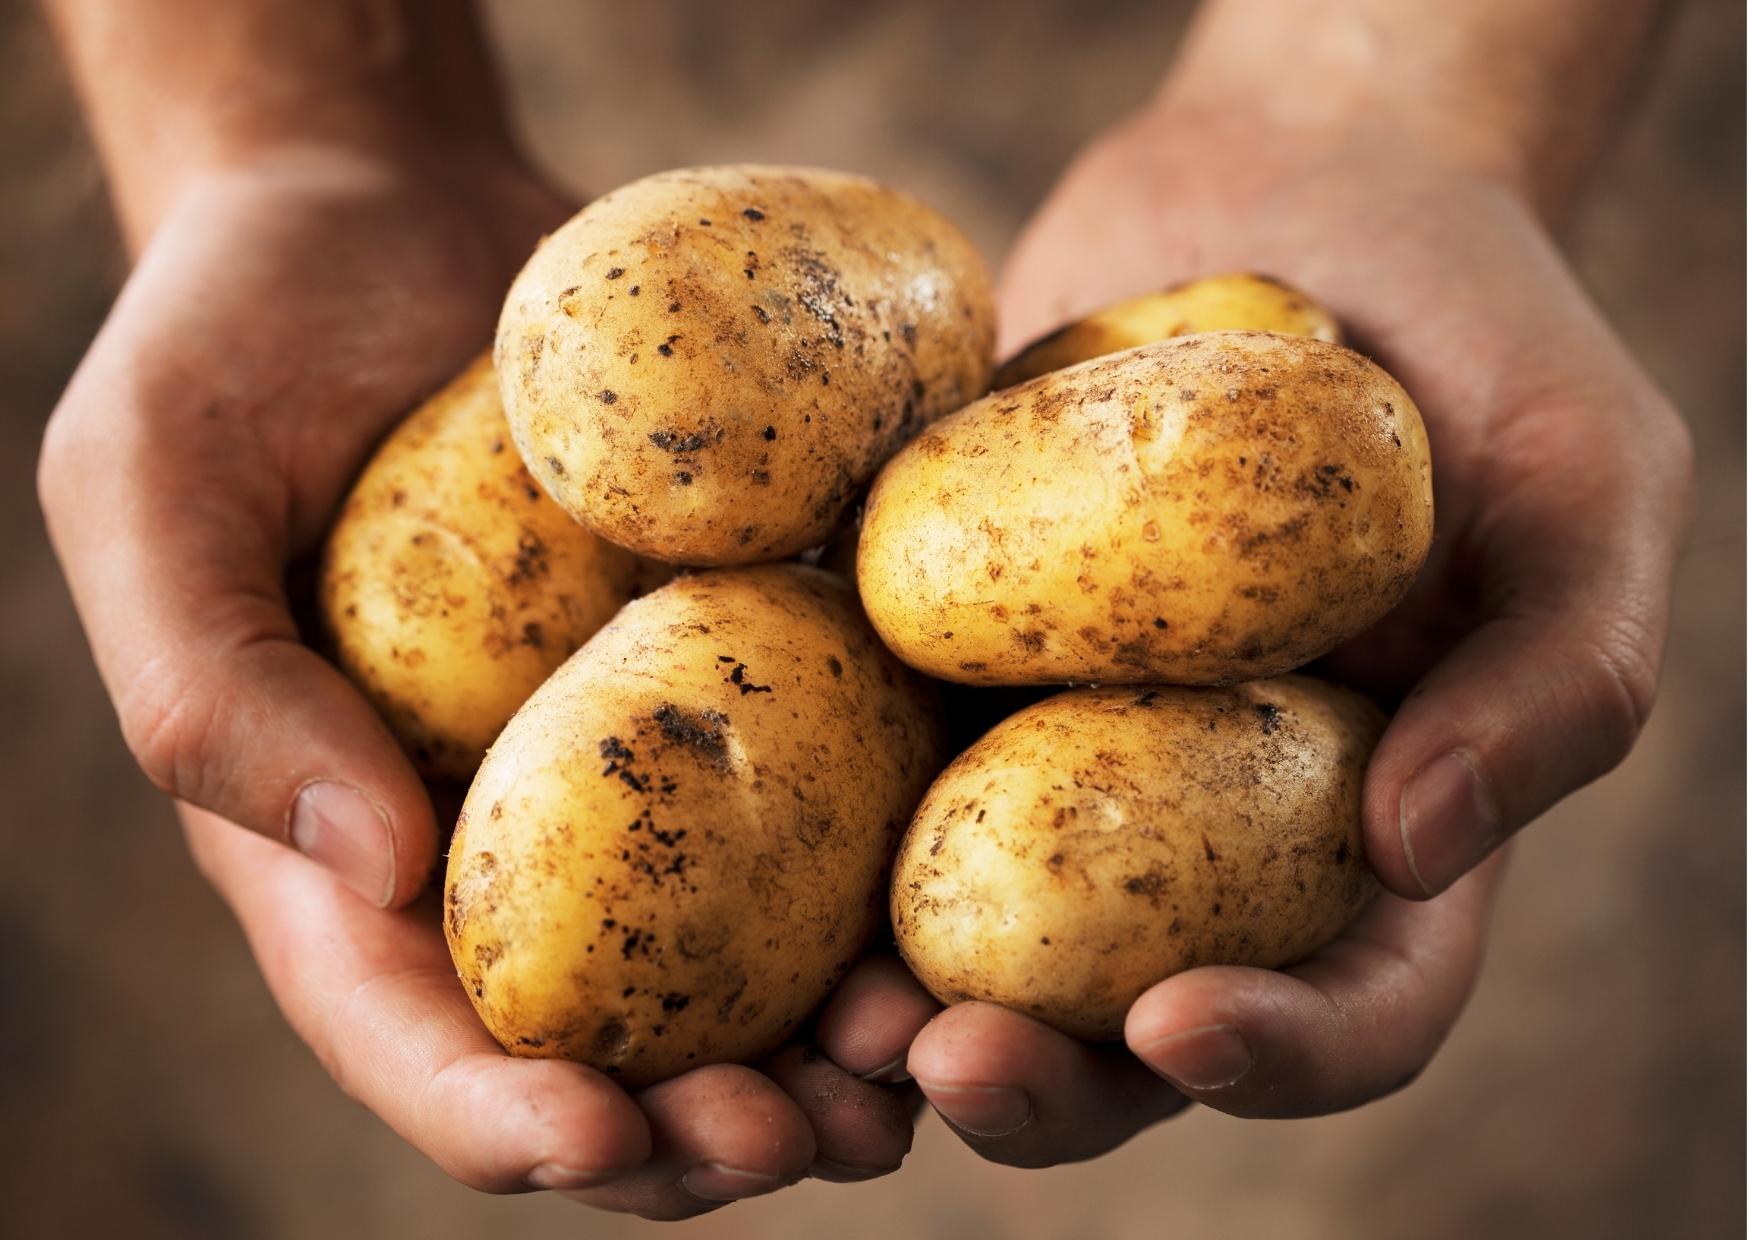 potatis-historia-nar-kom-potatisen-till-sverige-citat-potatisfakta-aktivitet-for-aldre